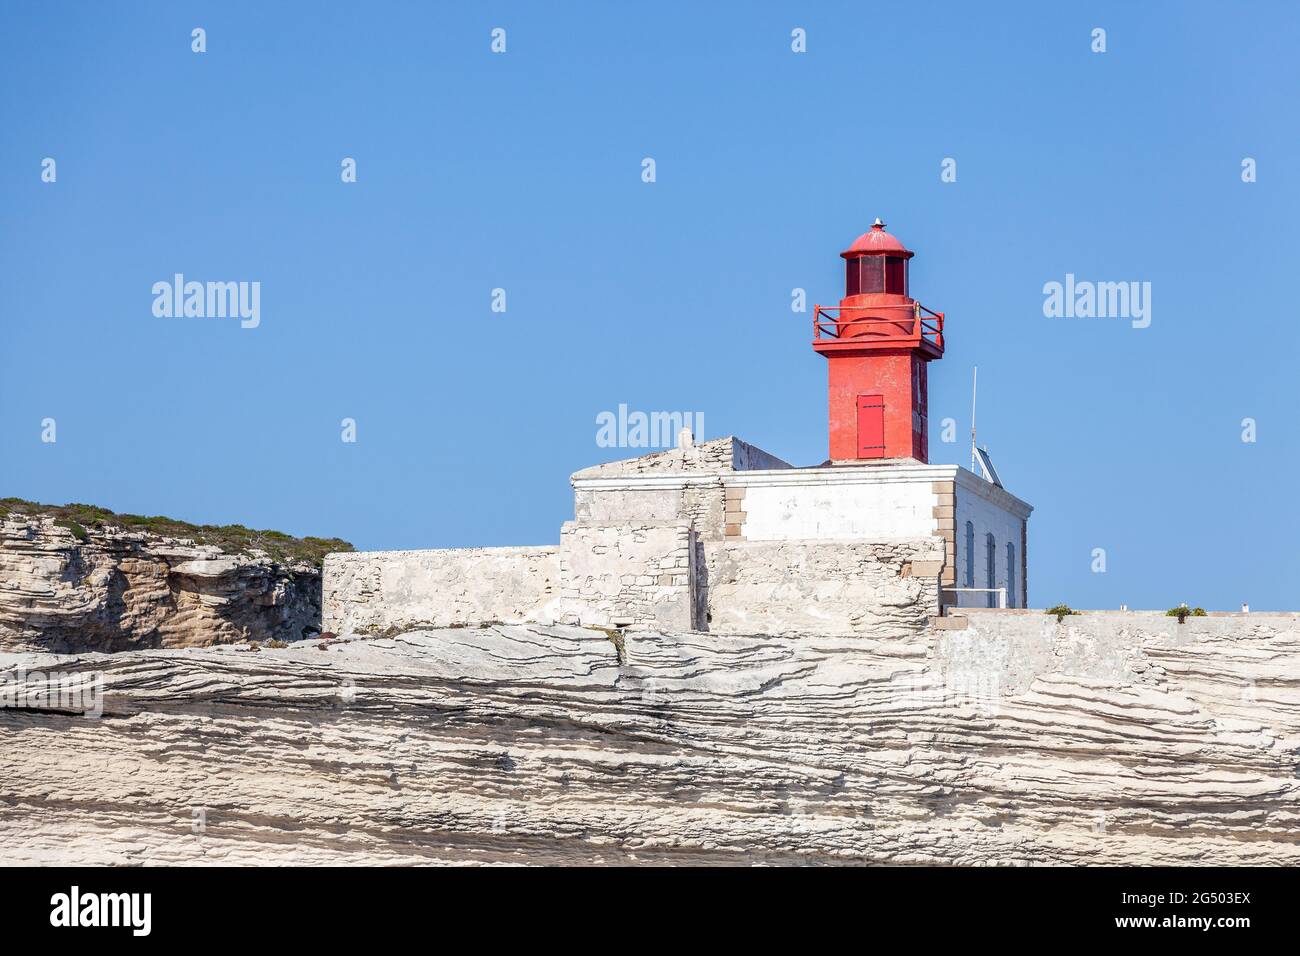 Der rote Leuchtturm markiert den Eingang zum Hafen von Bonifacio. Korsika, Frankreich Stockfoto